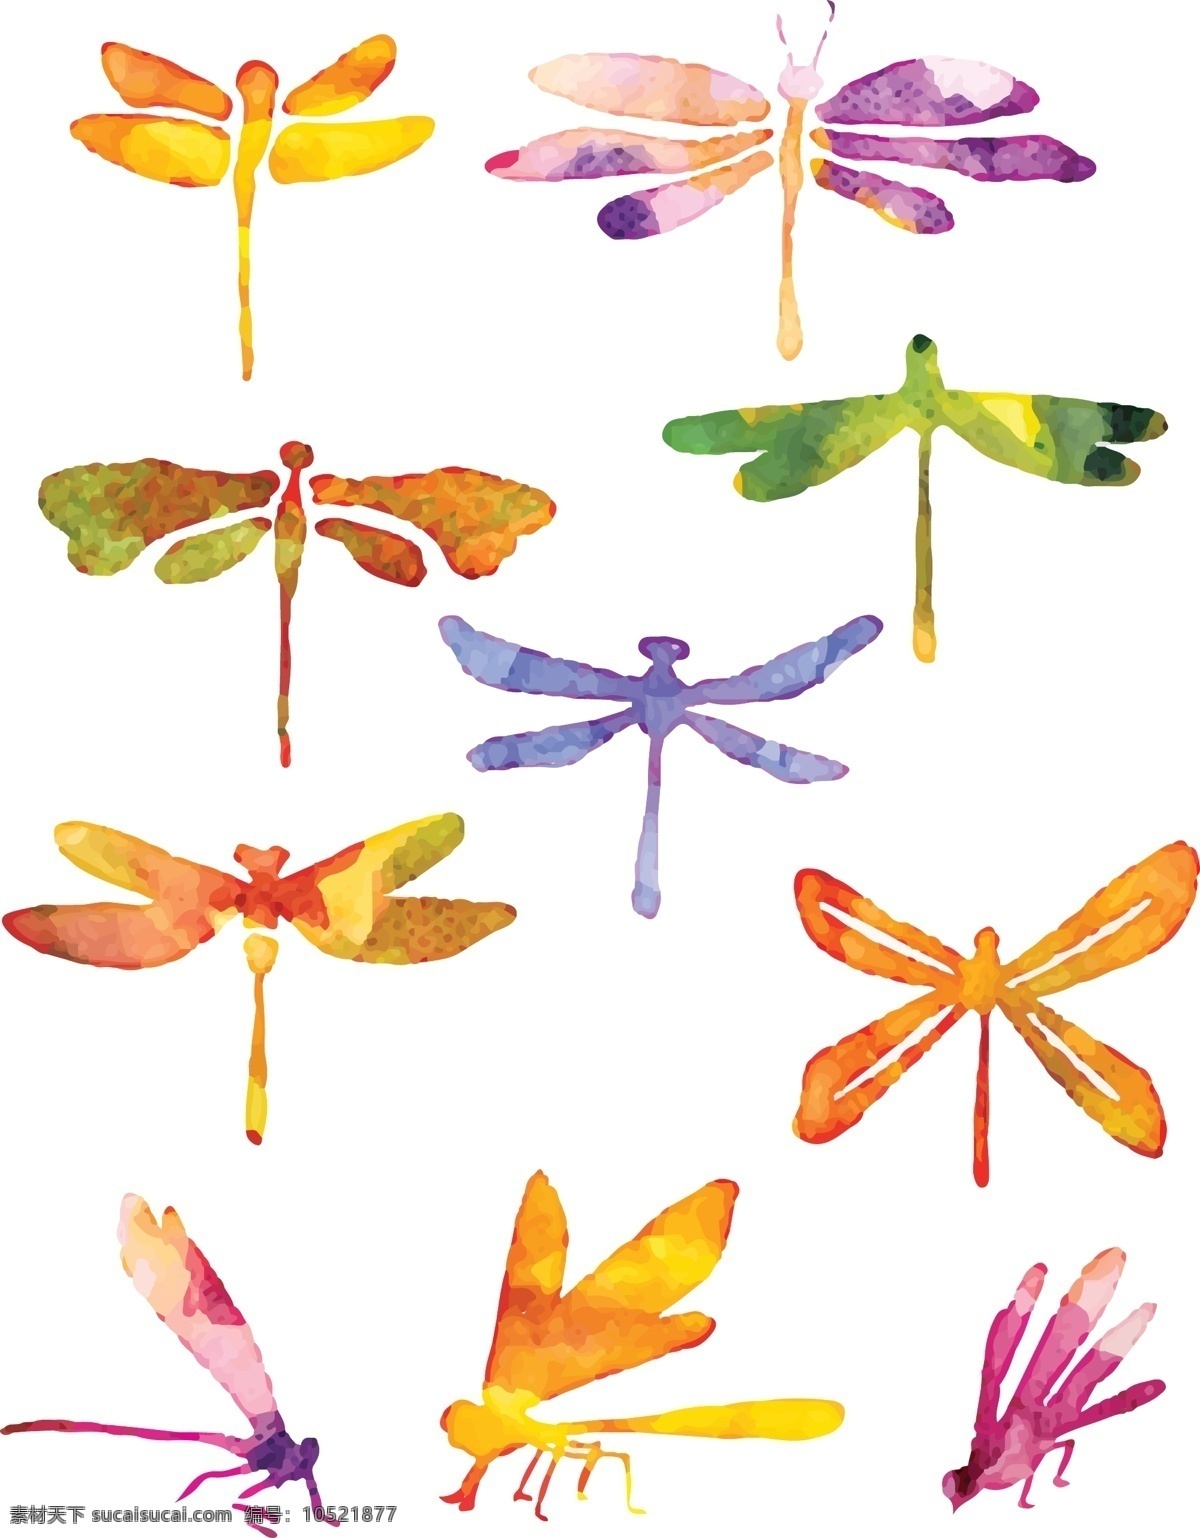 蜻蜓 矢量 卡通 装饰 元素 翅膀 矢量素材 创意设计 源文件 昆虫 平面设计元素 装饰图案